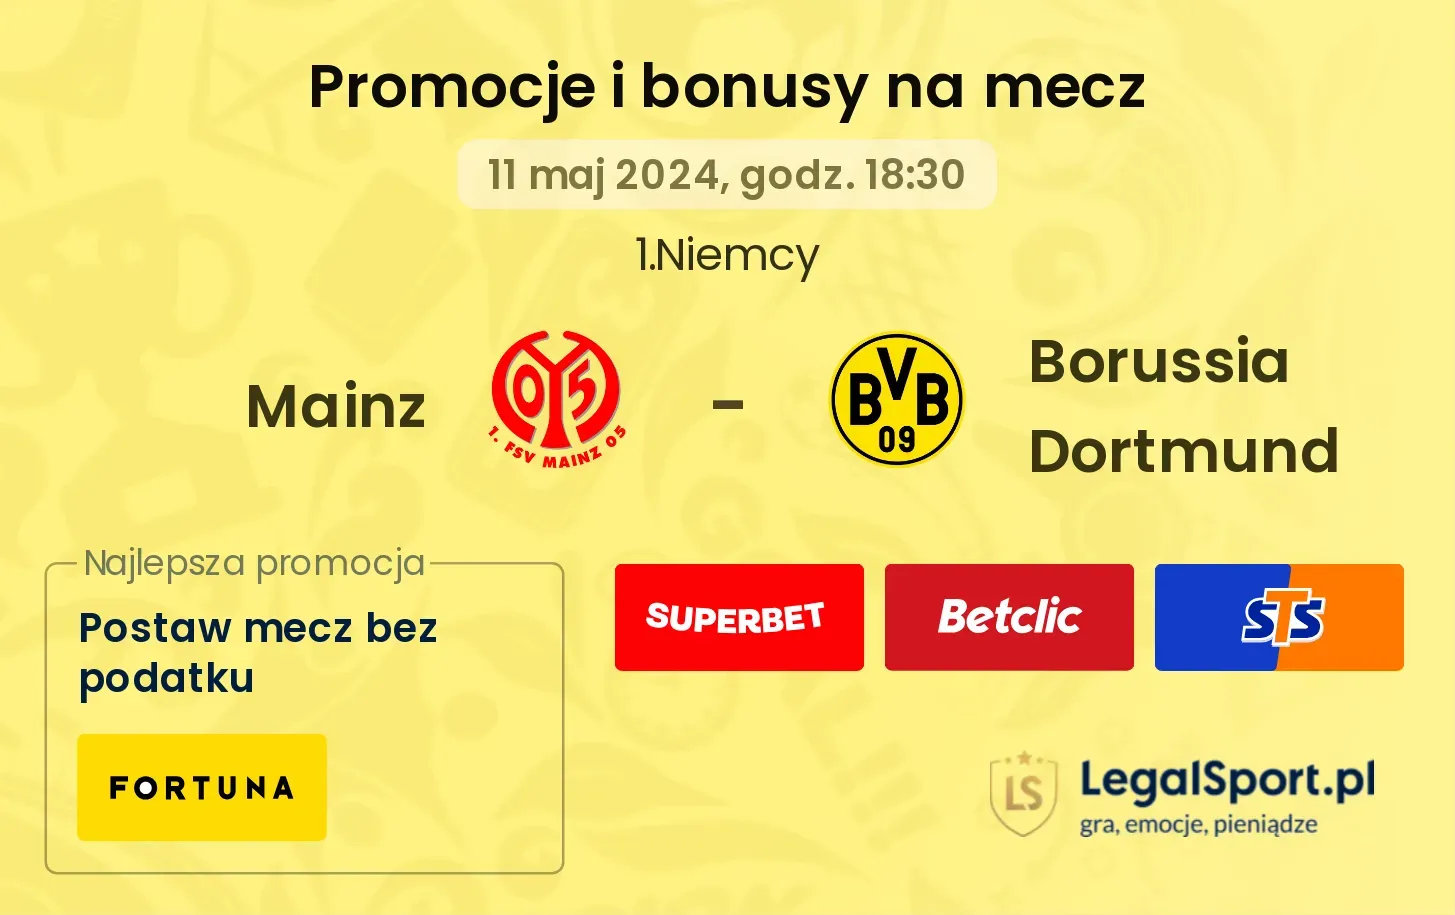 Mainz - Borussia Dortmund bonusy i promocje (11.05, 18:30)